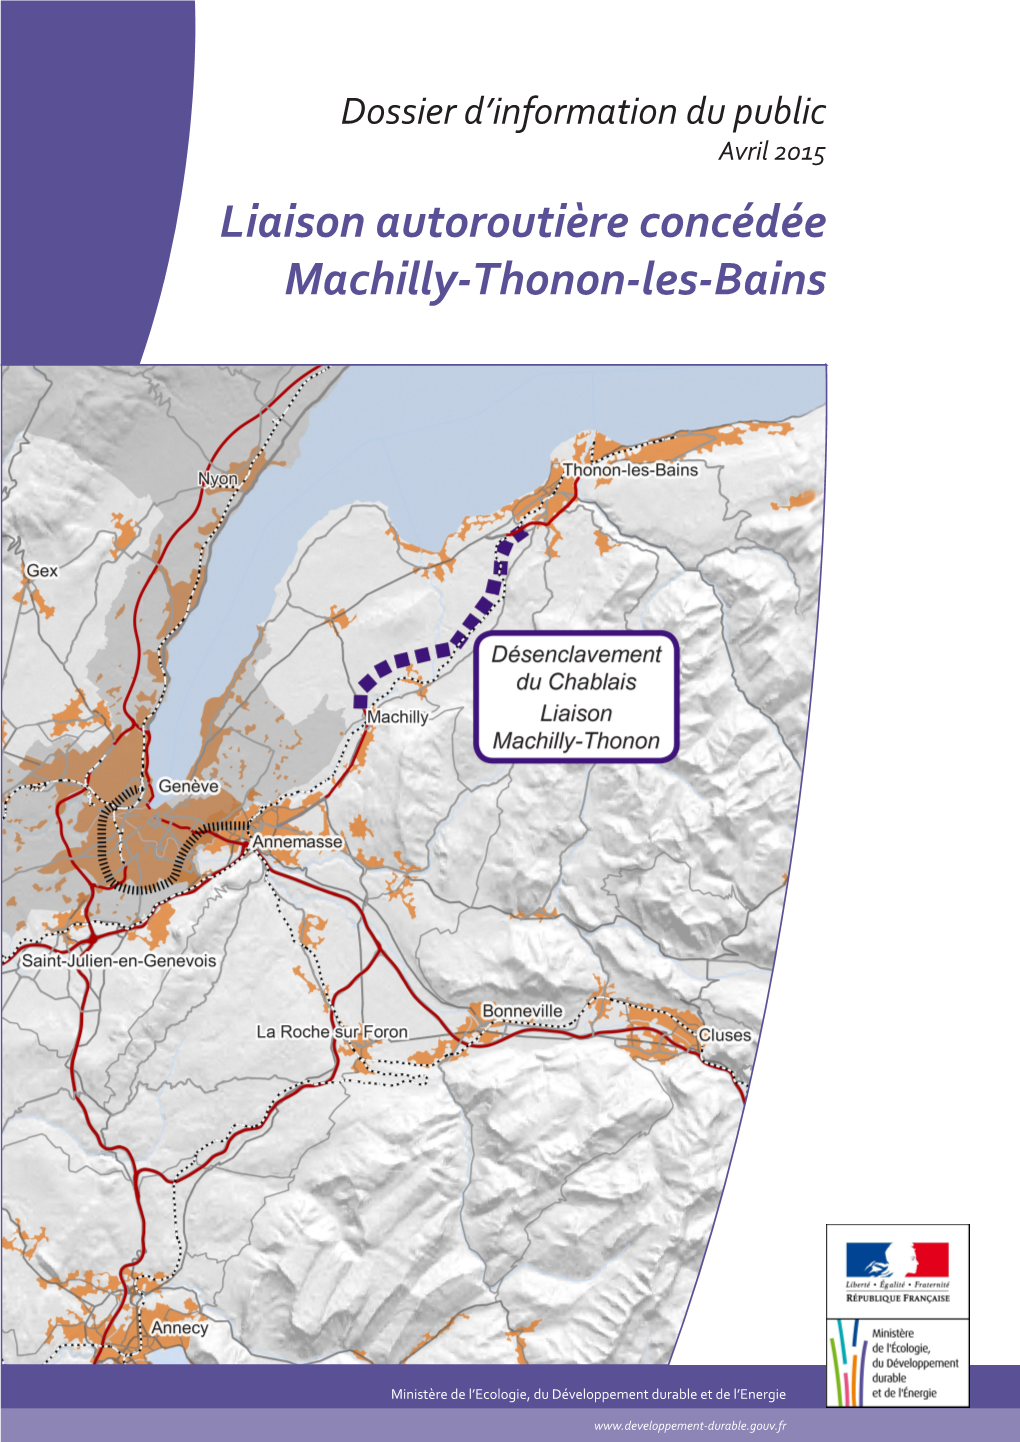 Liaison Autoroutière Concédée Machilly-Thonon-Les-Bains